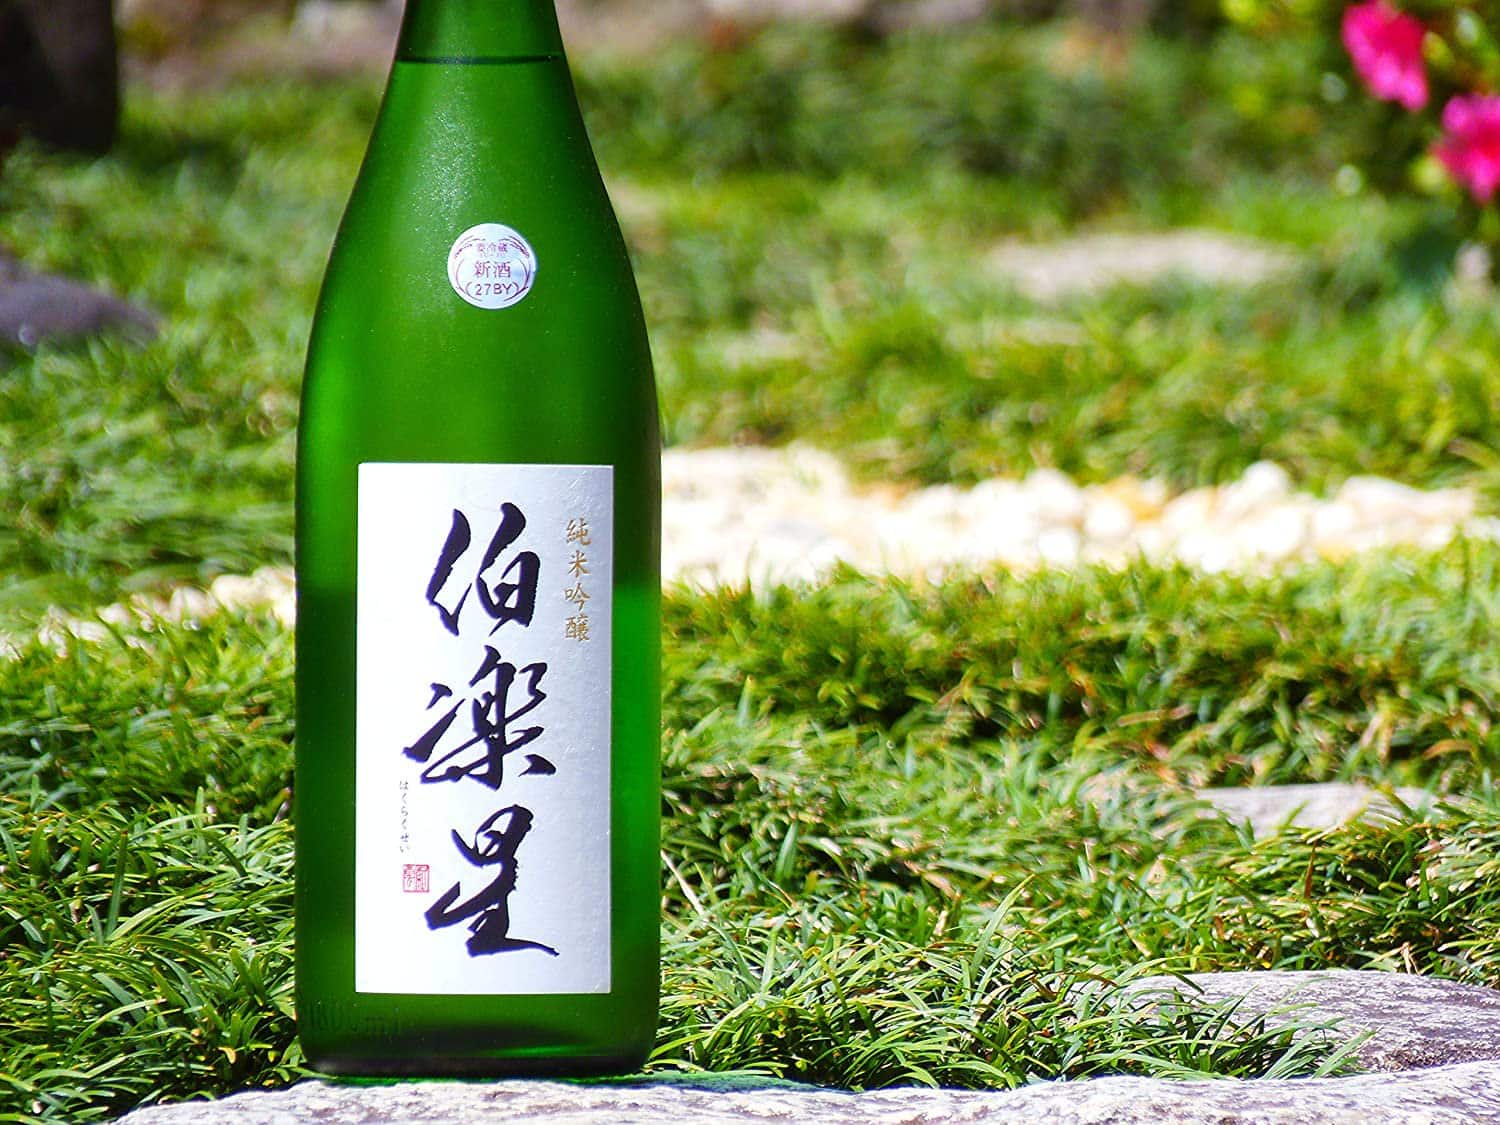 伯楽星 純米大吟醸 720ml ☆究極の食中酒の最高峰 - 日本酒